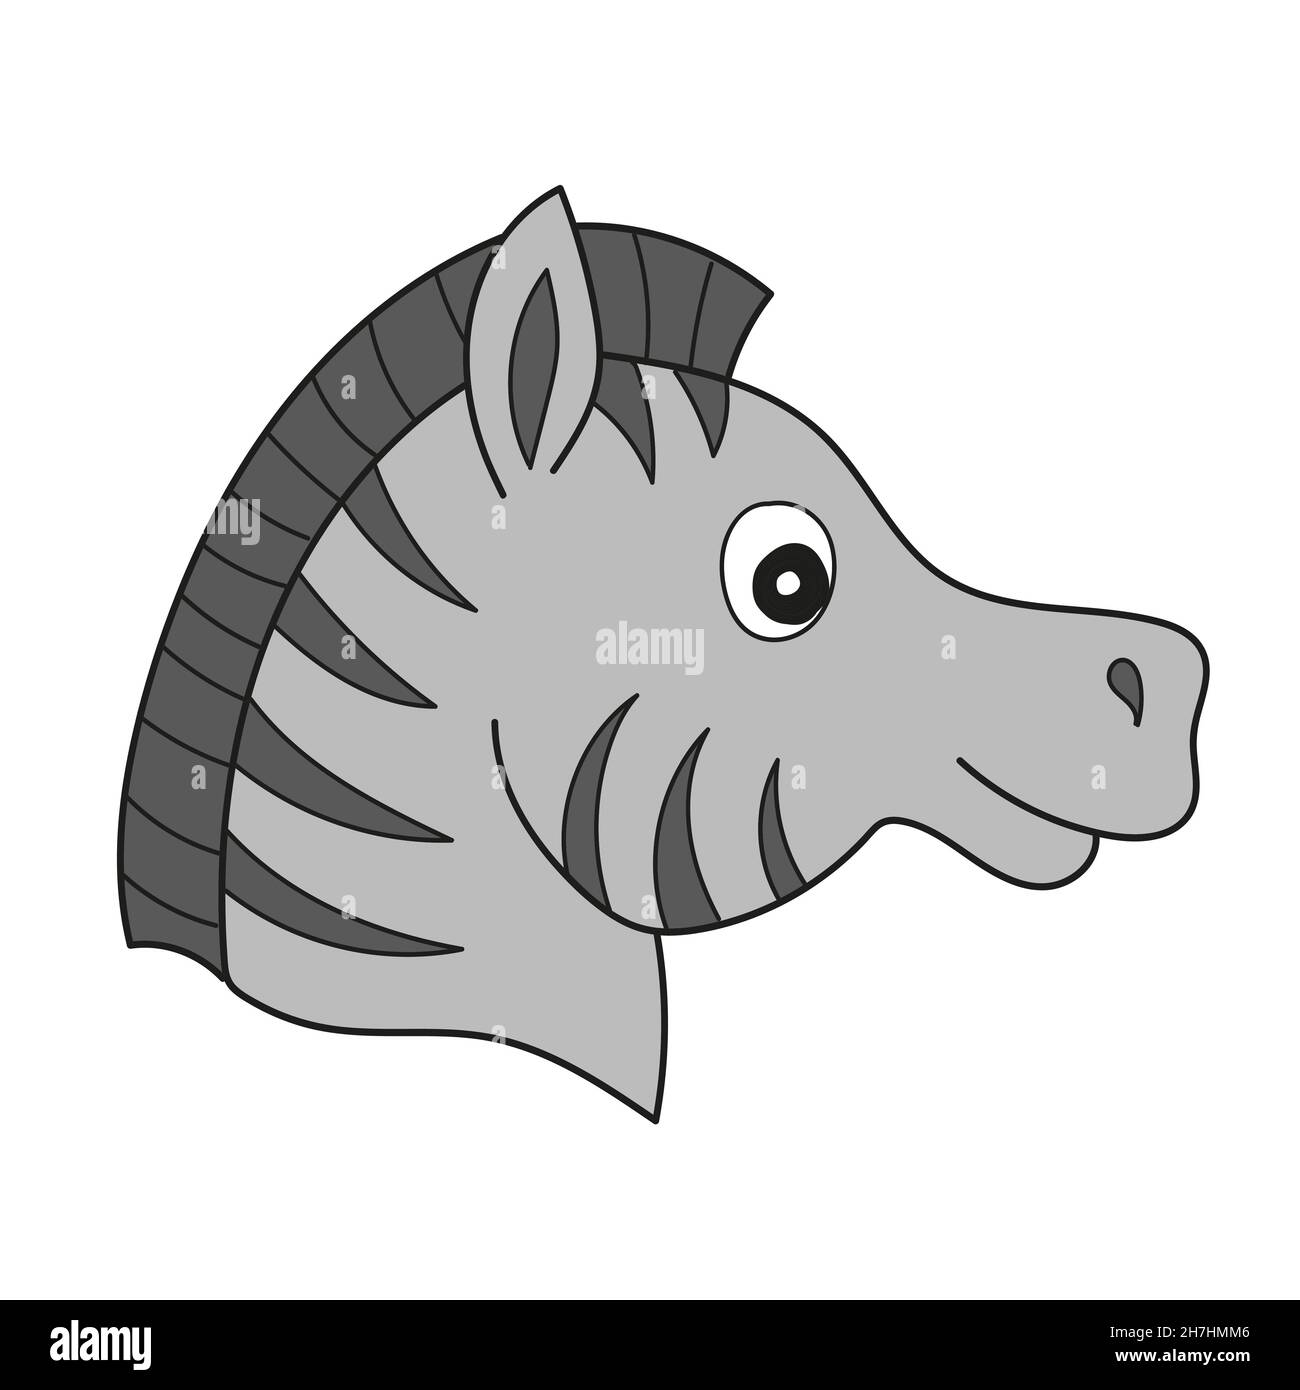 Icône de dessin animé simple.Portrait de Zebra réalisé dans un style de dessin animé simple.Tête de zèbre africain au cou.Icône stylisée artistique isolée pour le design.Vecteur Illustration de Vecteur